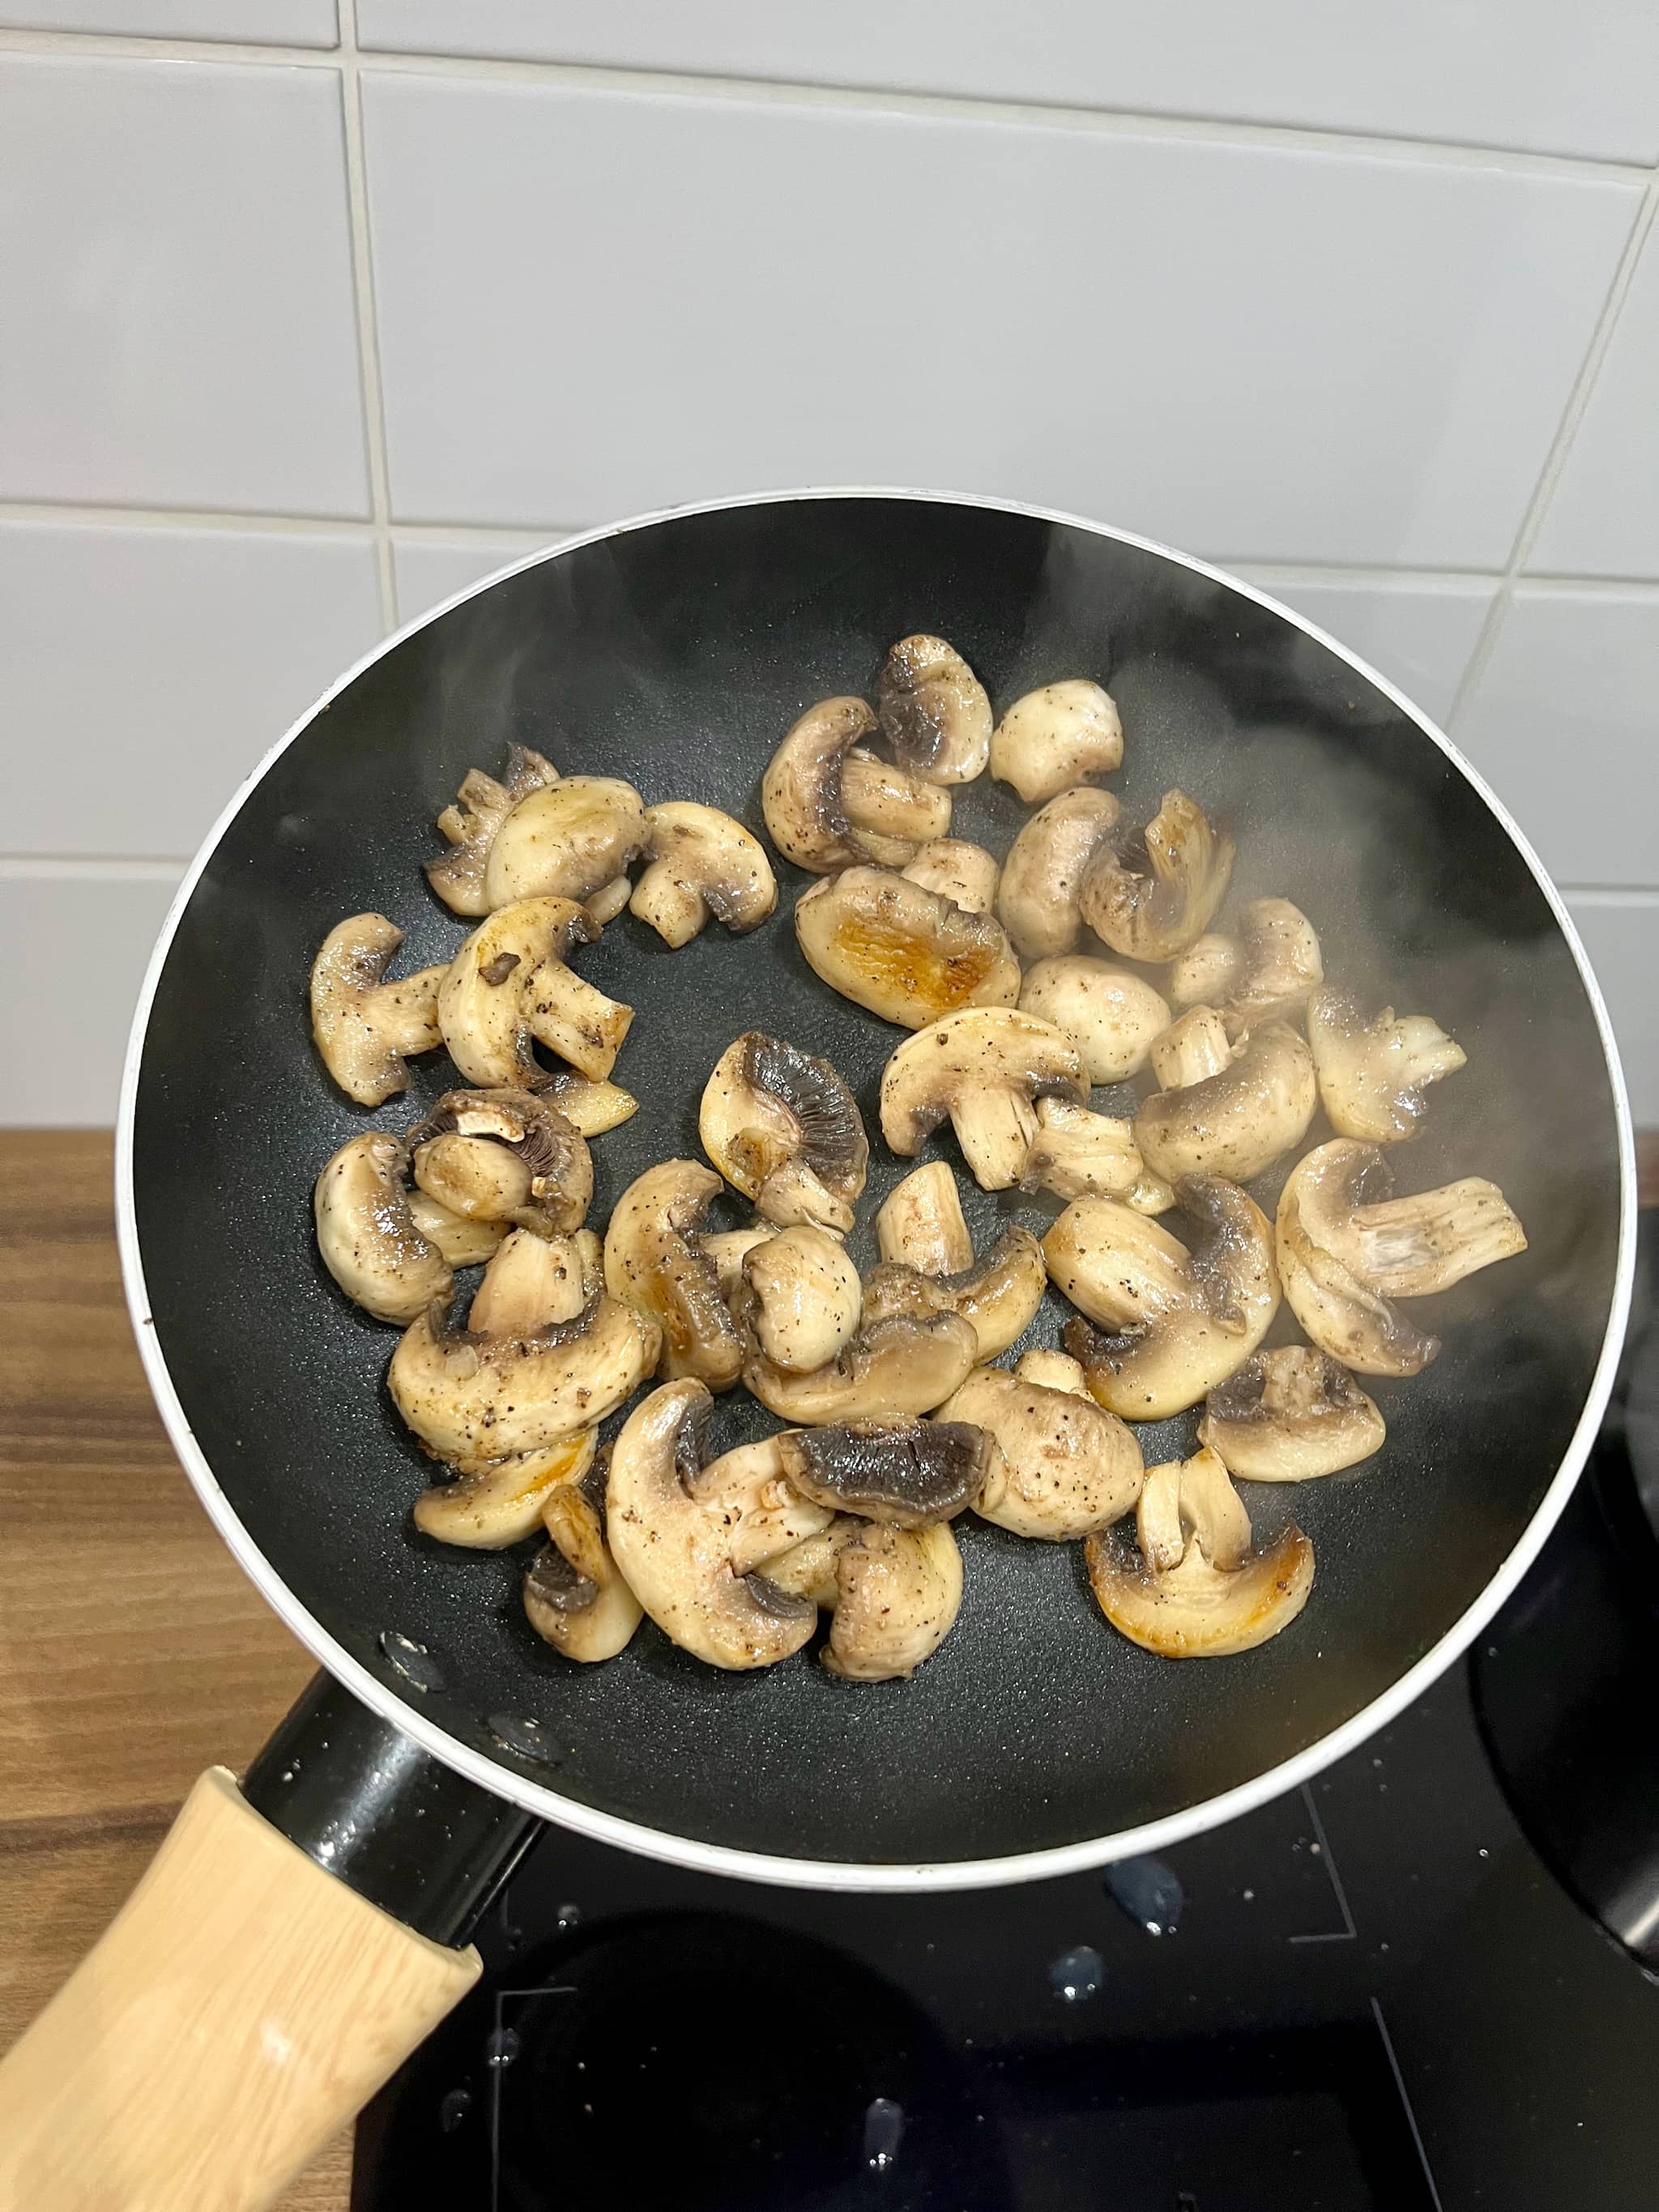 Mushrooms in the pan